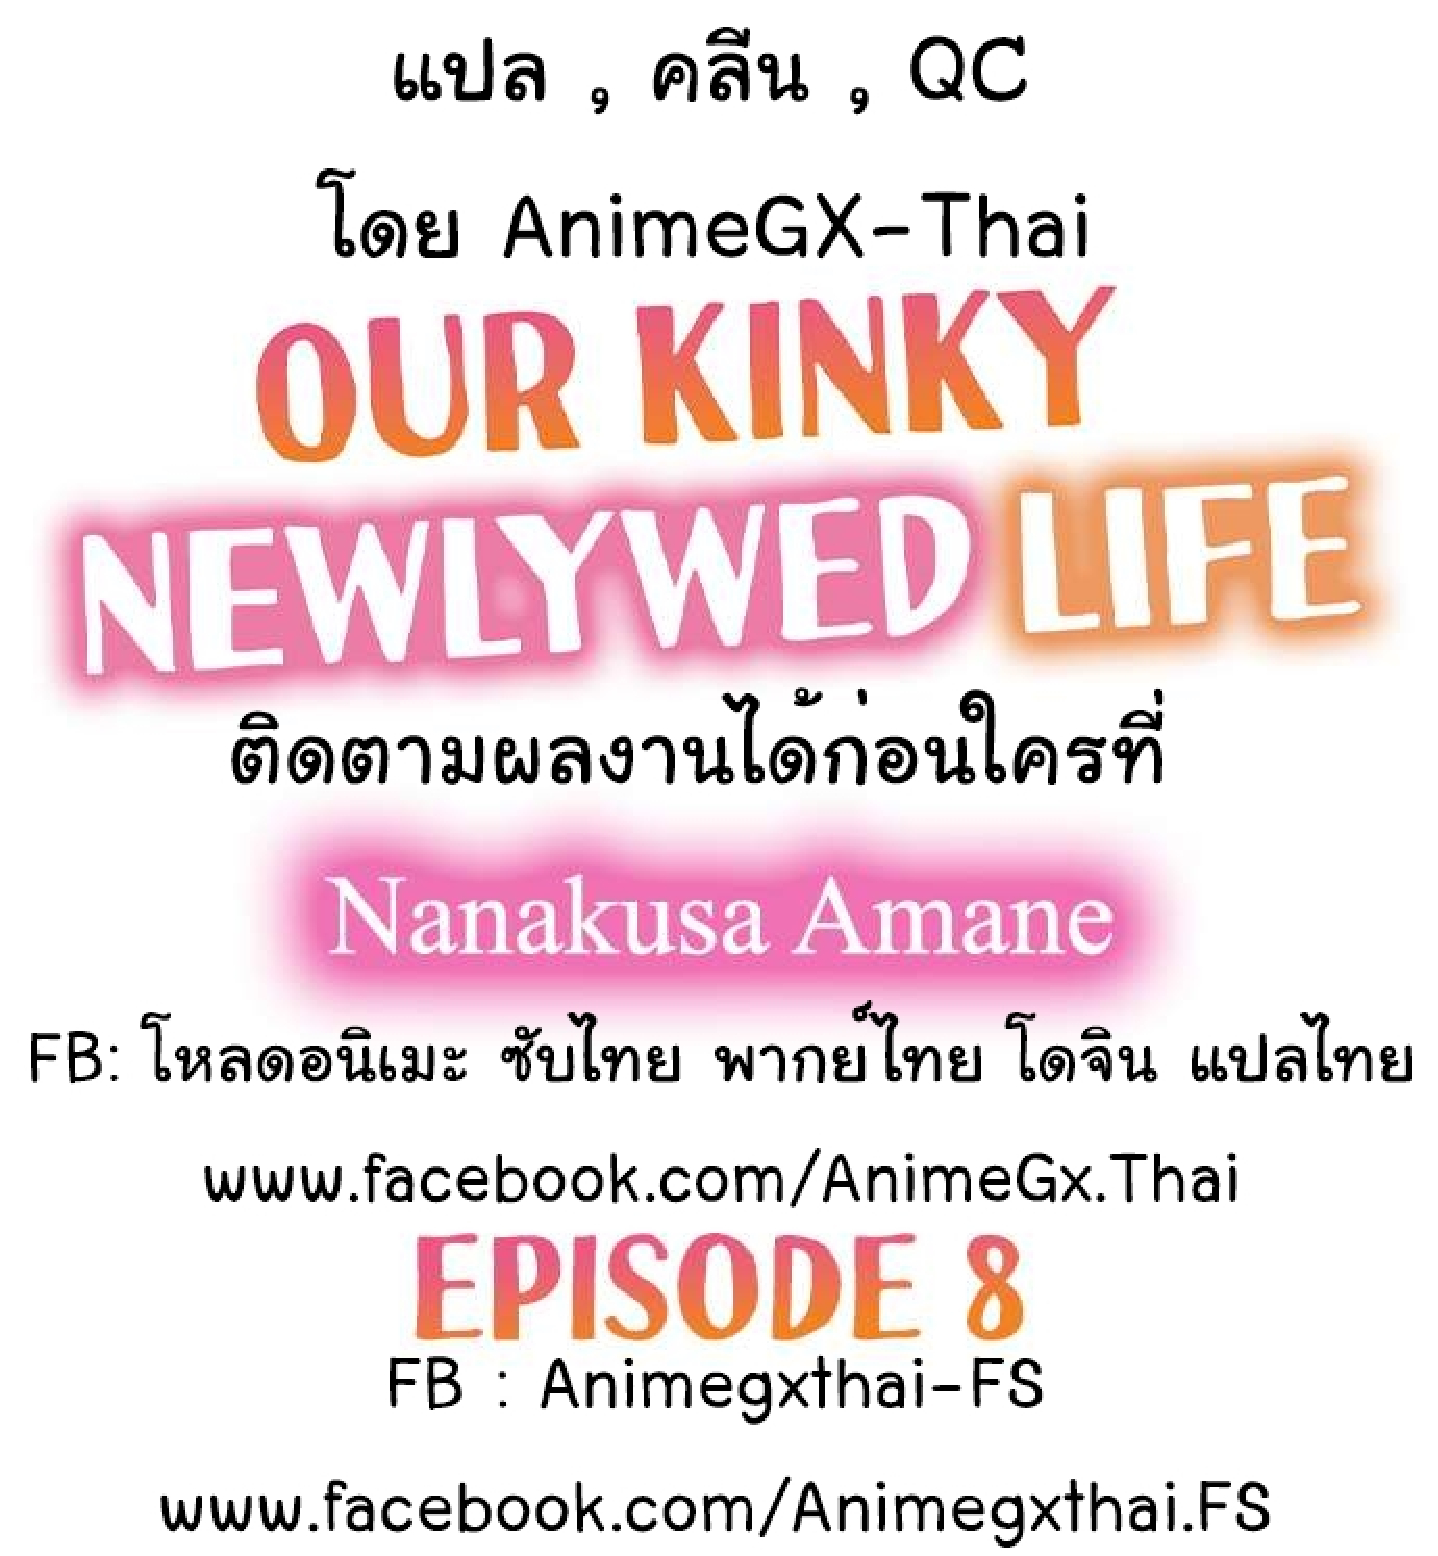 Our Kinky Newlywed Life 8 (2)